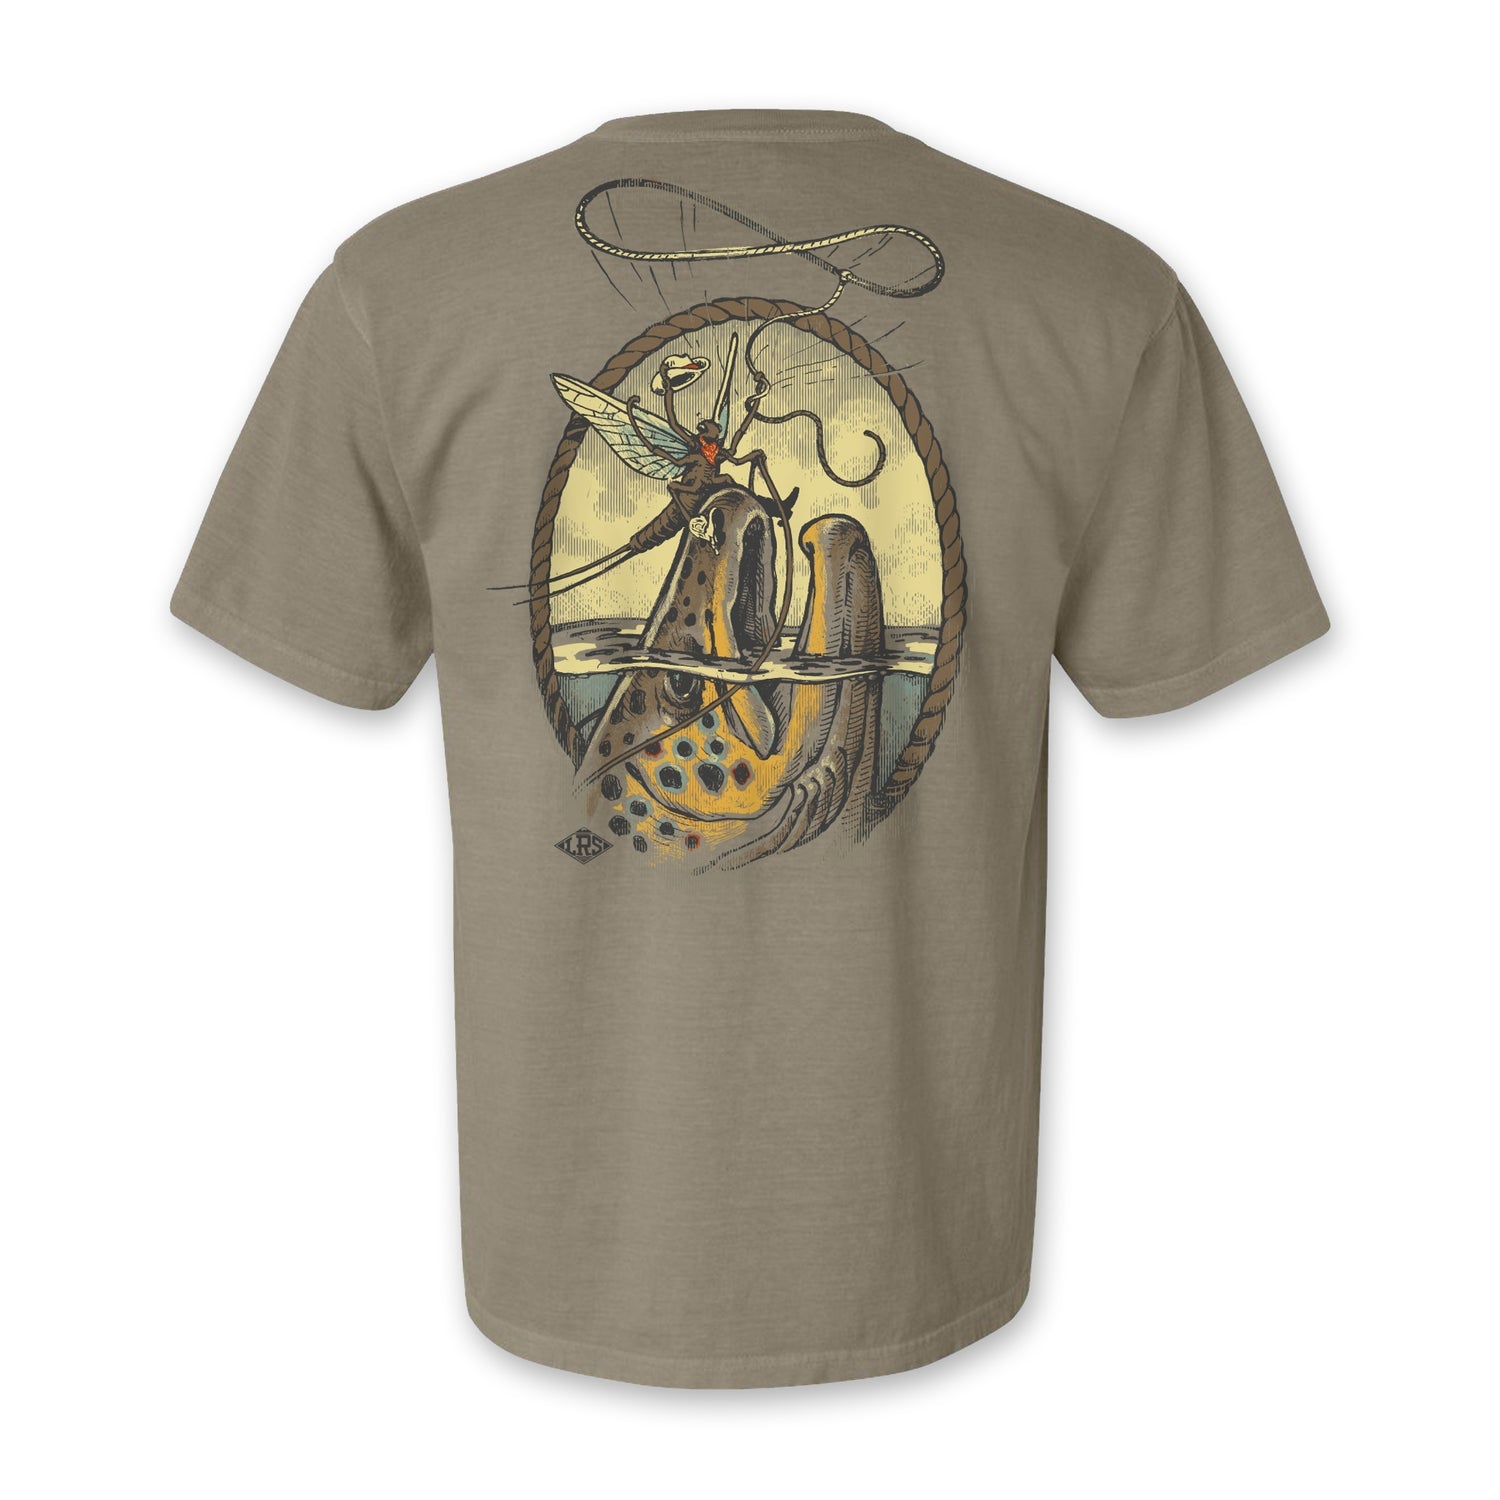 SALE T-Shirts, Men's Fishing T-Shirt